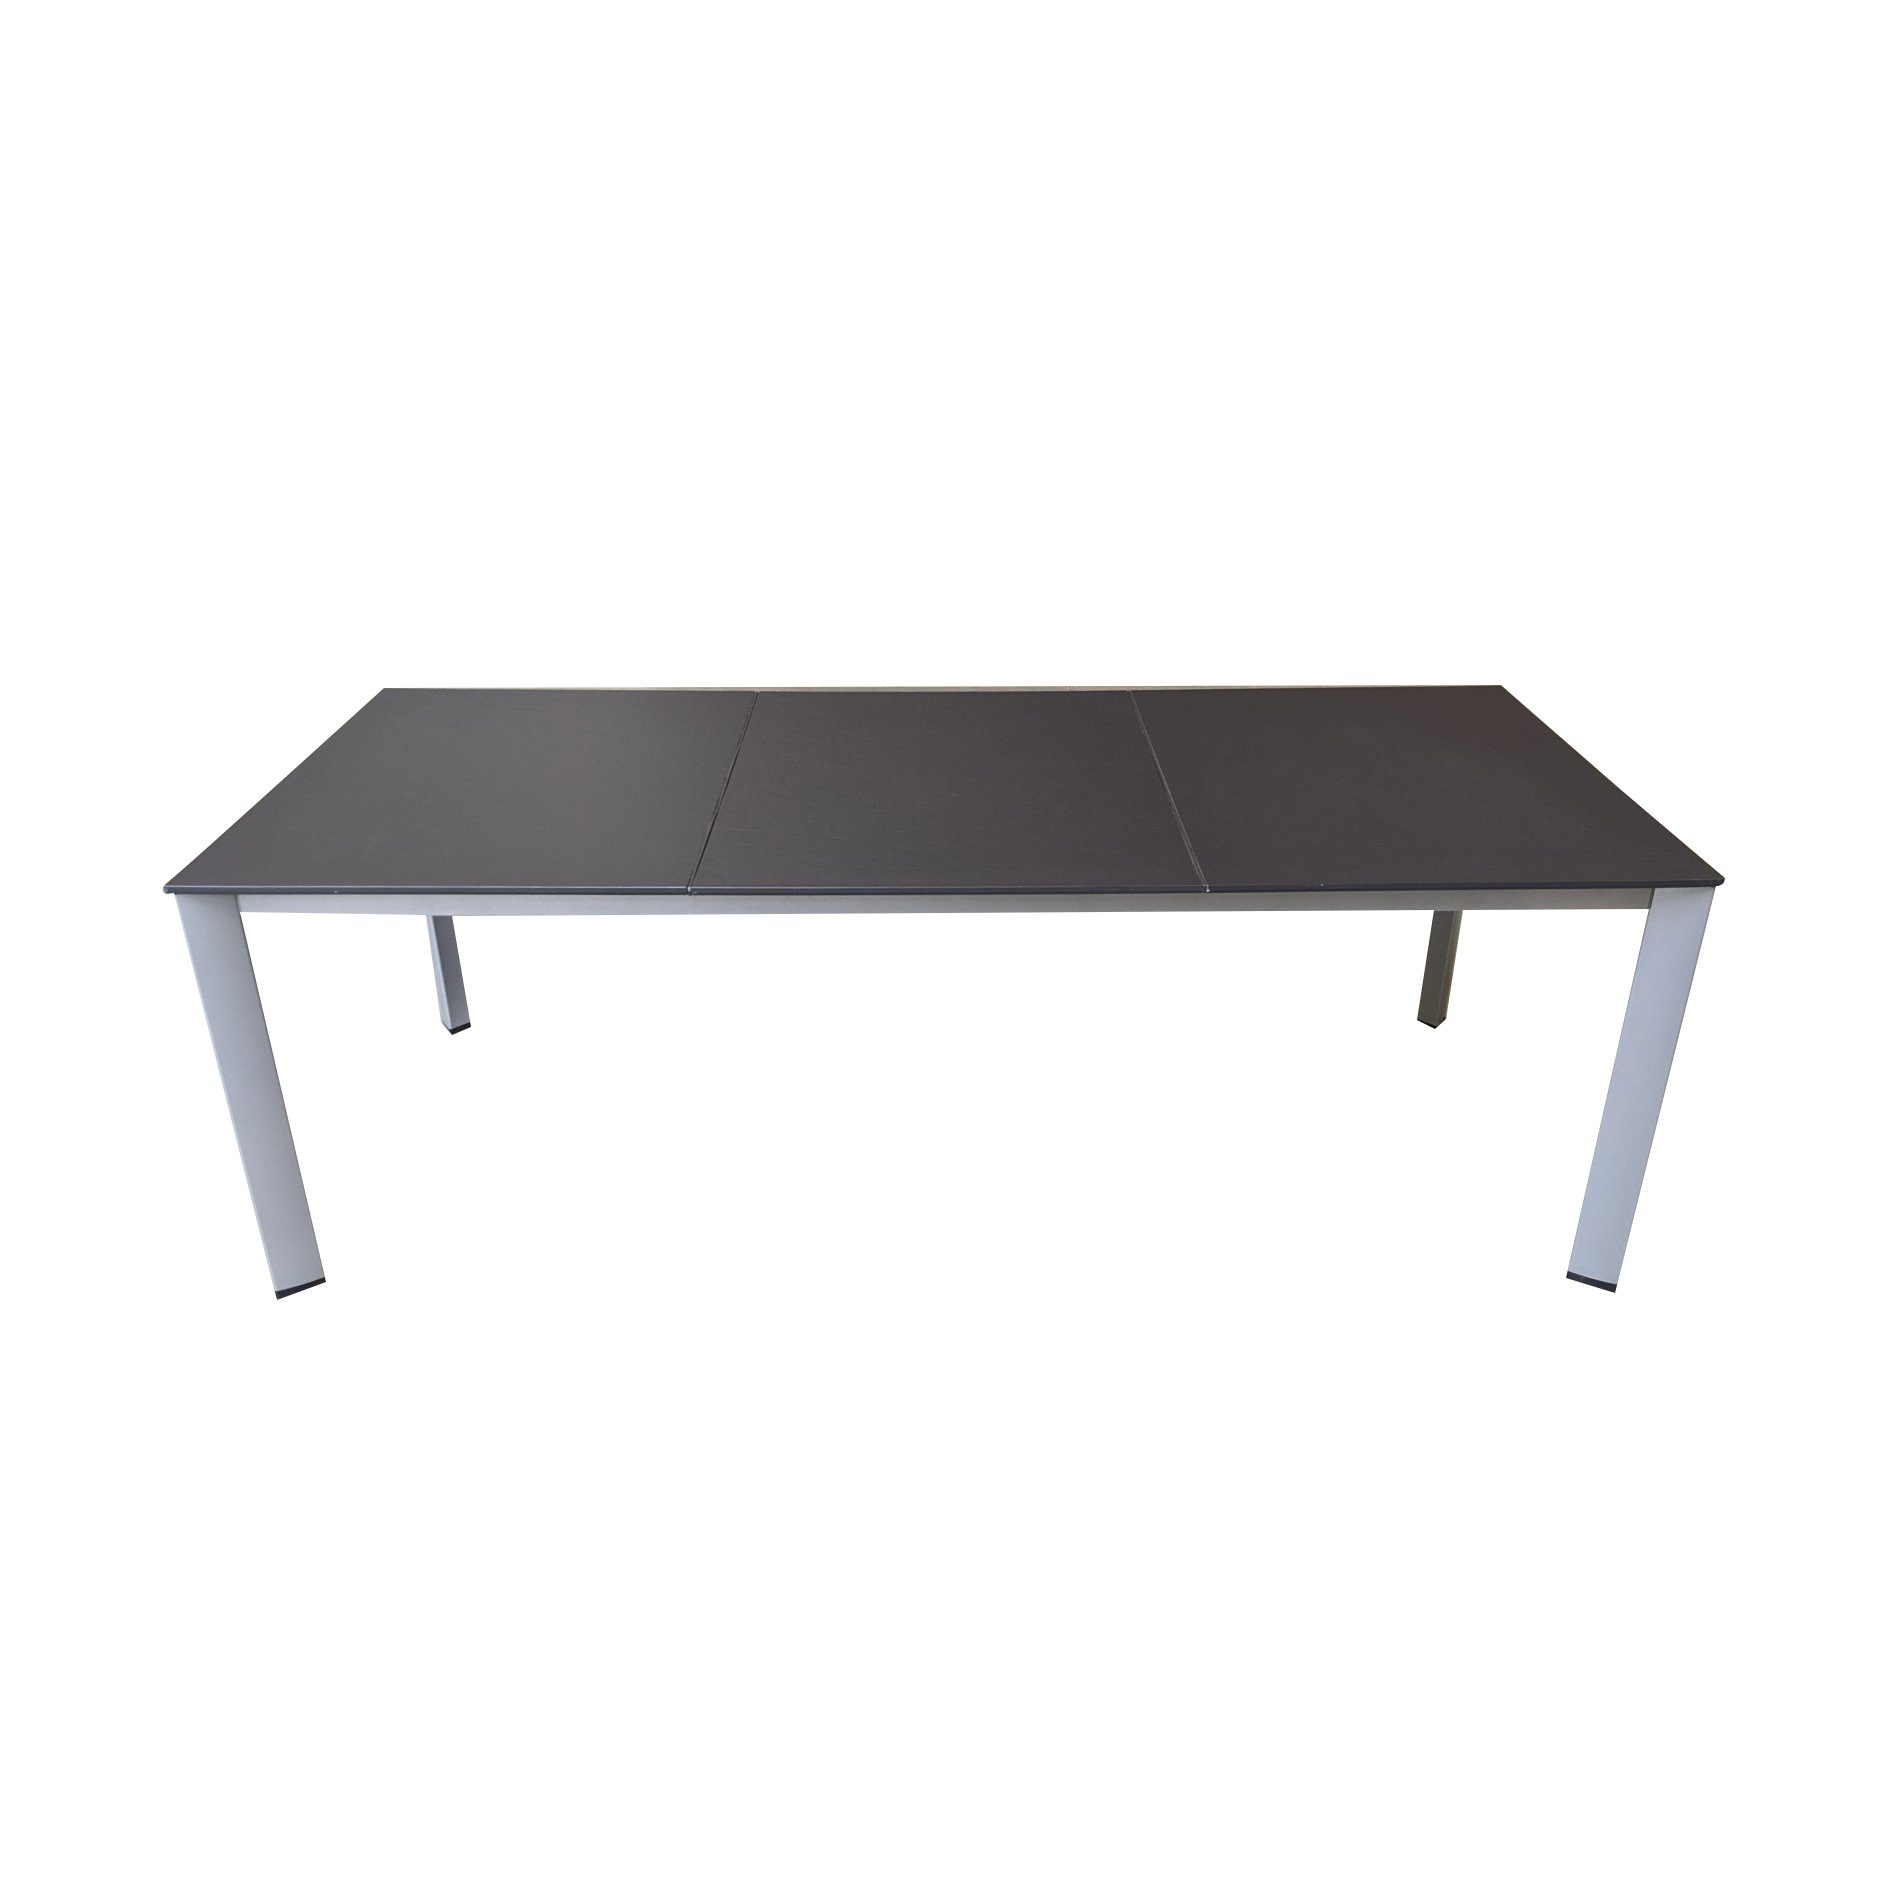 Kettler "Edge" Gartentisch, Gestell Aluminium silber, Tischplatte Kettalux-Plus anthrazit (Schieferoptik), 220x95 cm